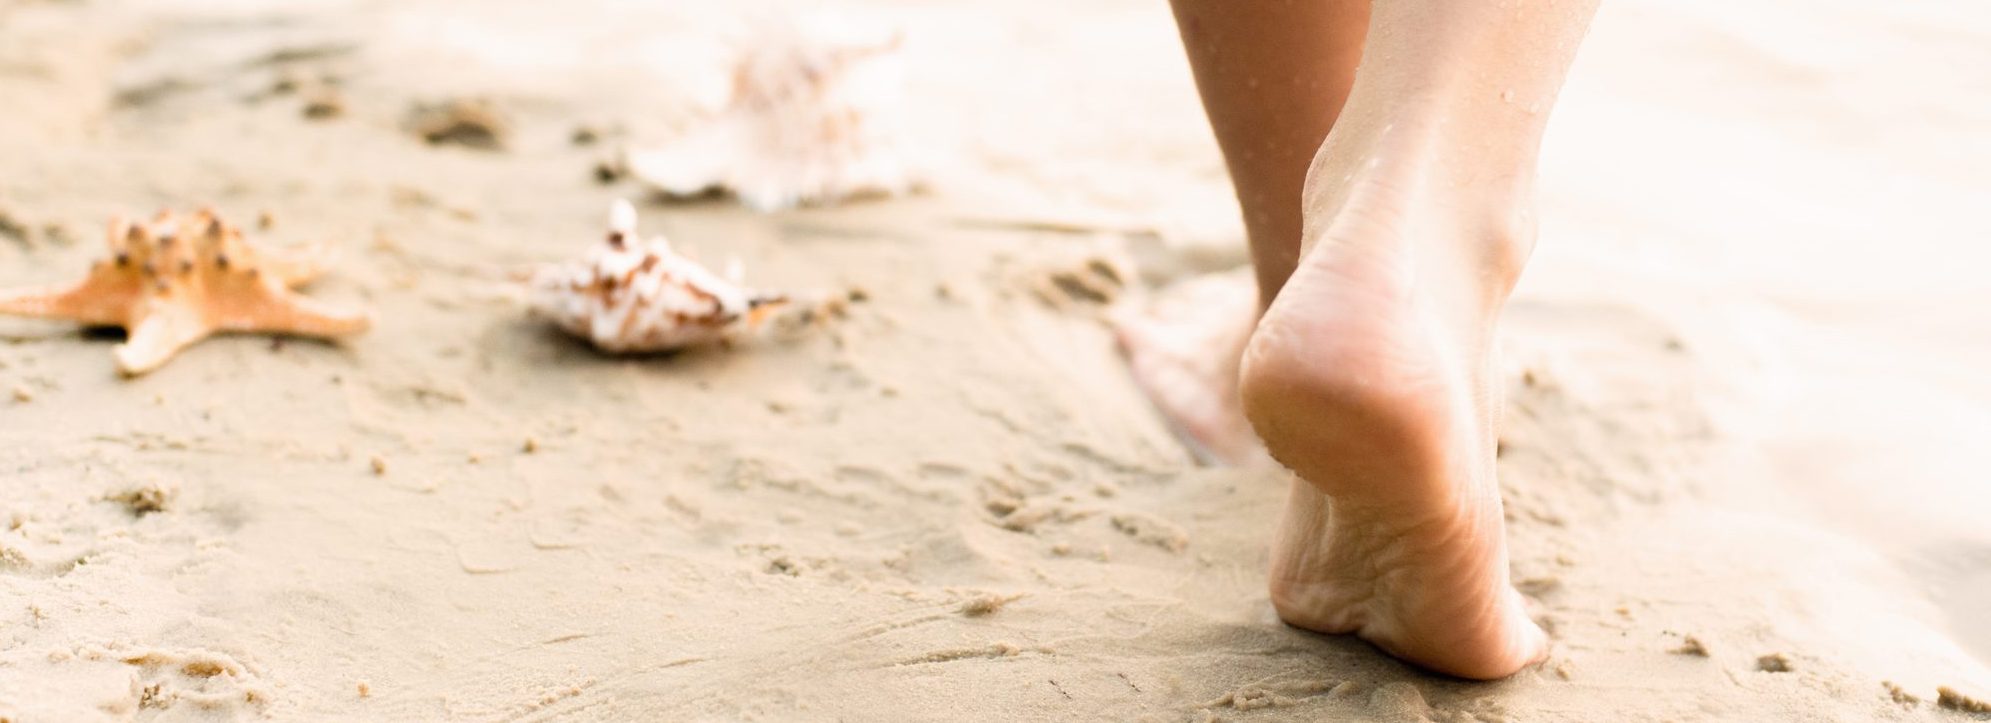 Fußpflege München – Schöne Füße für den Strand